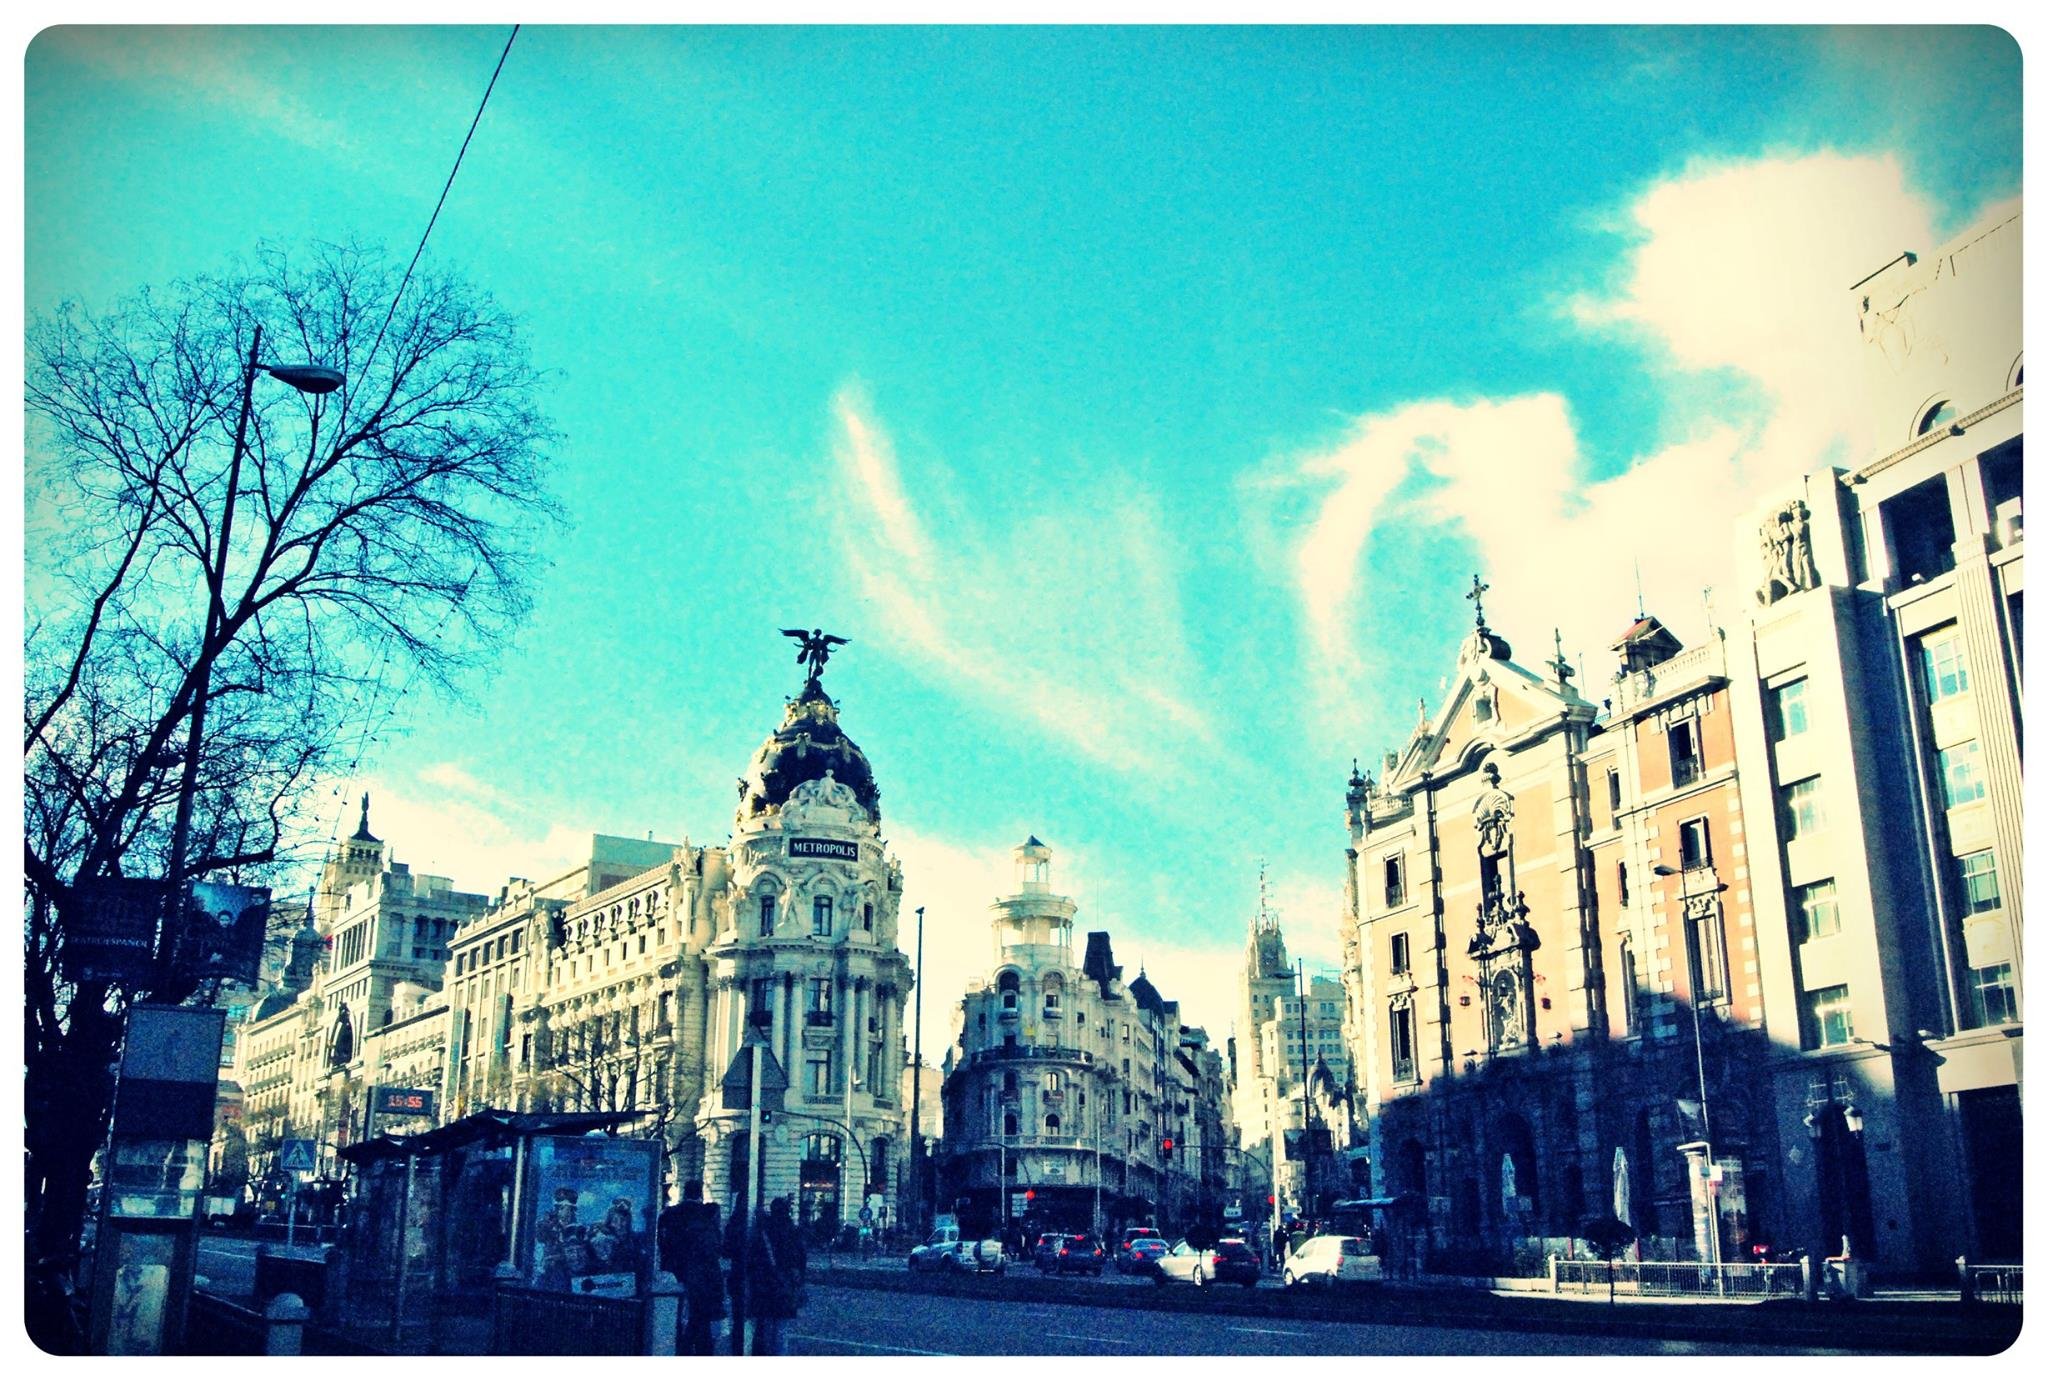 “Madrid volverá”: una carta de amor a la ciudad de una librera de la capital